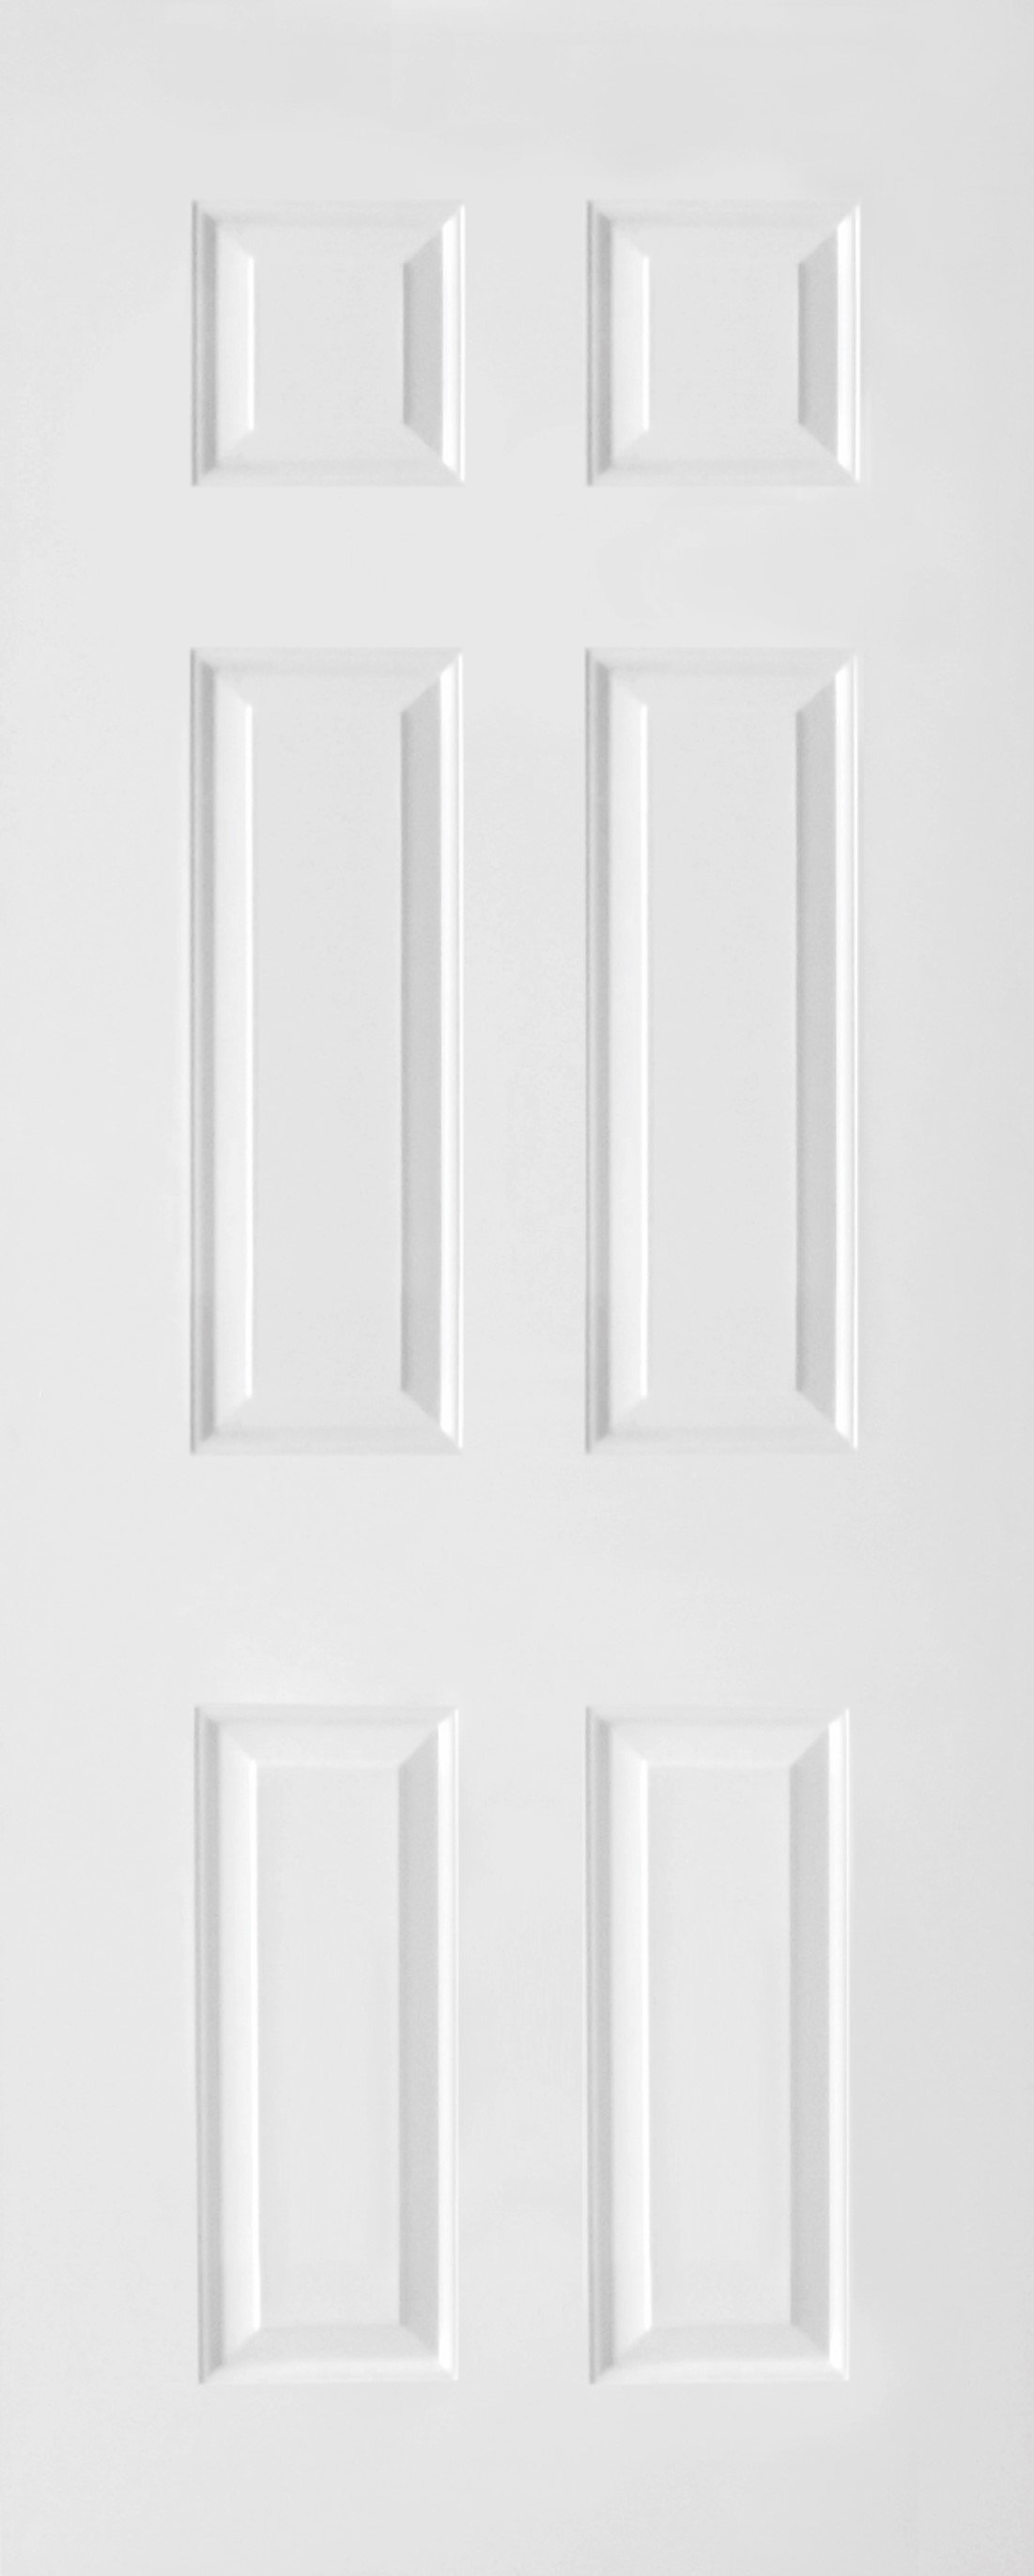 ประตู uPVC รุ่นภายนอก EXTERA สีขาว ลายไม้ บานลูกฟัก 6 ช่องตรง